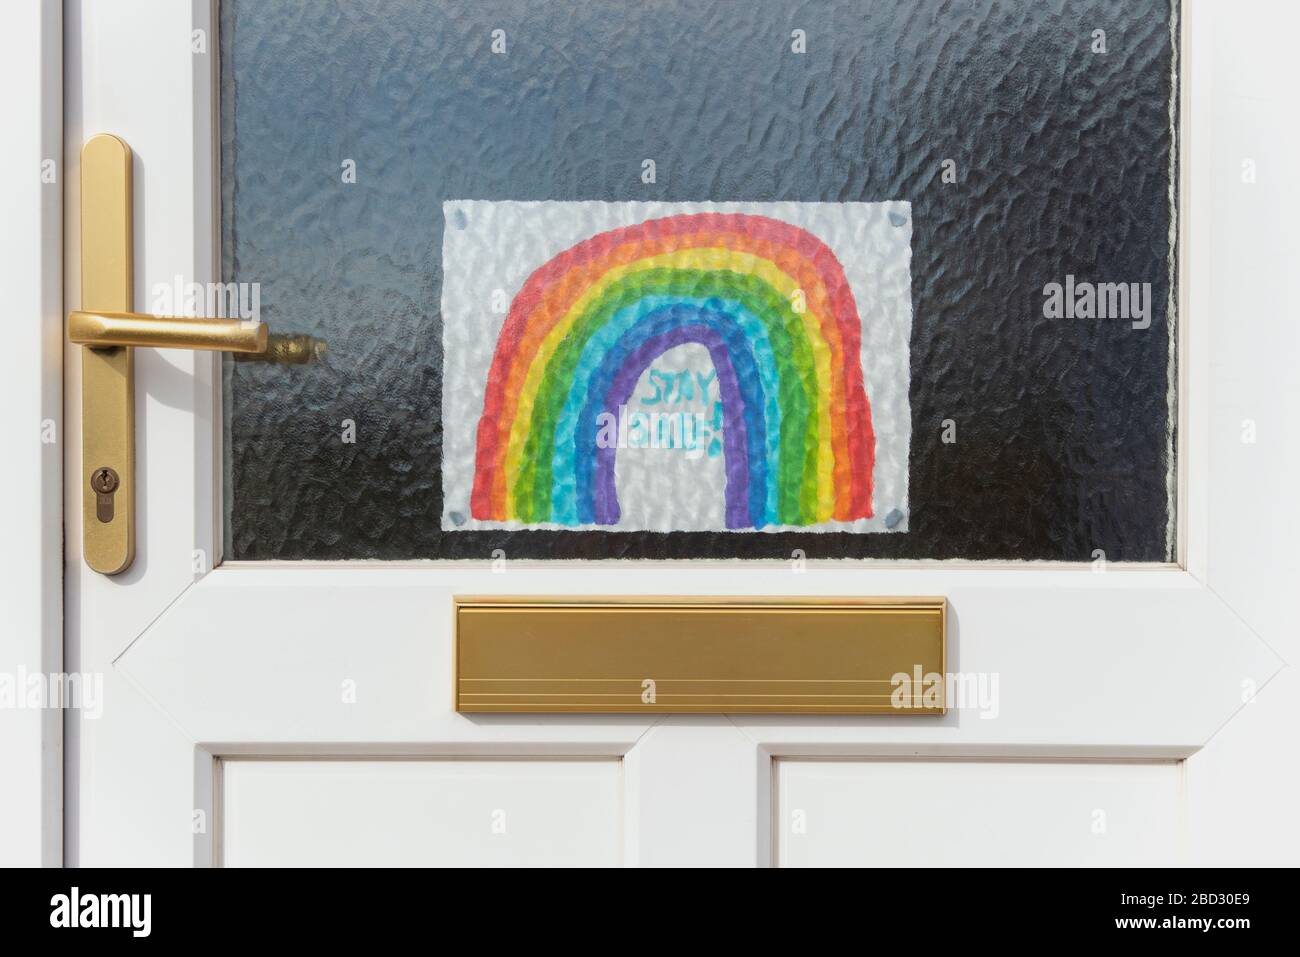 Disegno di un arcobaleno bloccato ad una porta d'ingresso durante la pandemia Covid-19 del 2020, incoraggiando la gente a rimanere al sicuro rimanendo a casa, da Anna Anderson Foto Stock